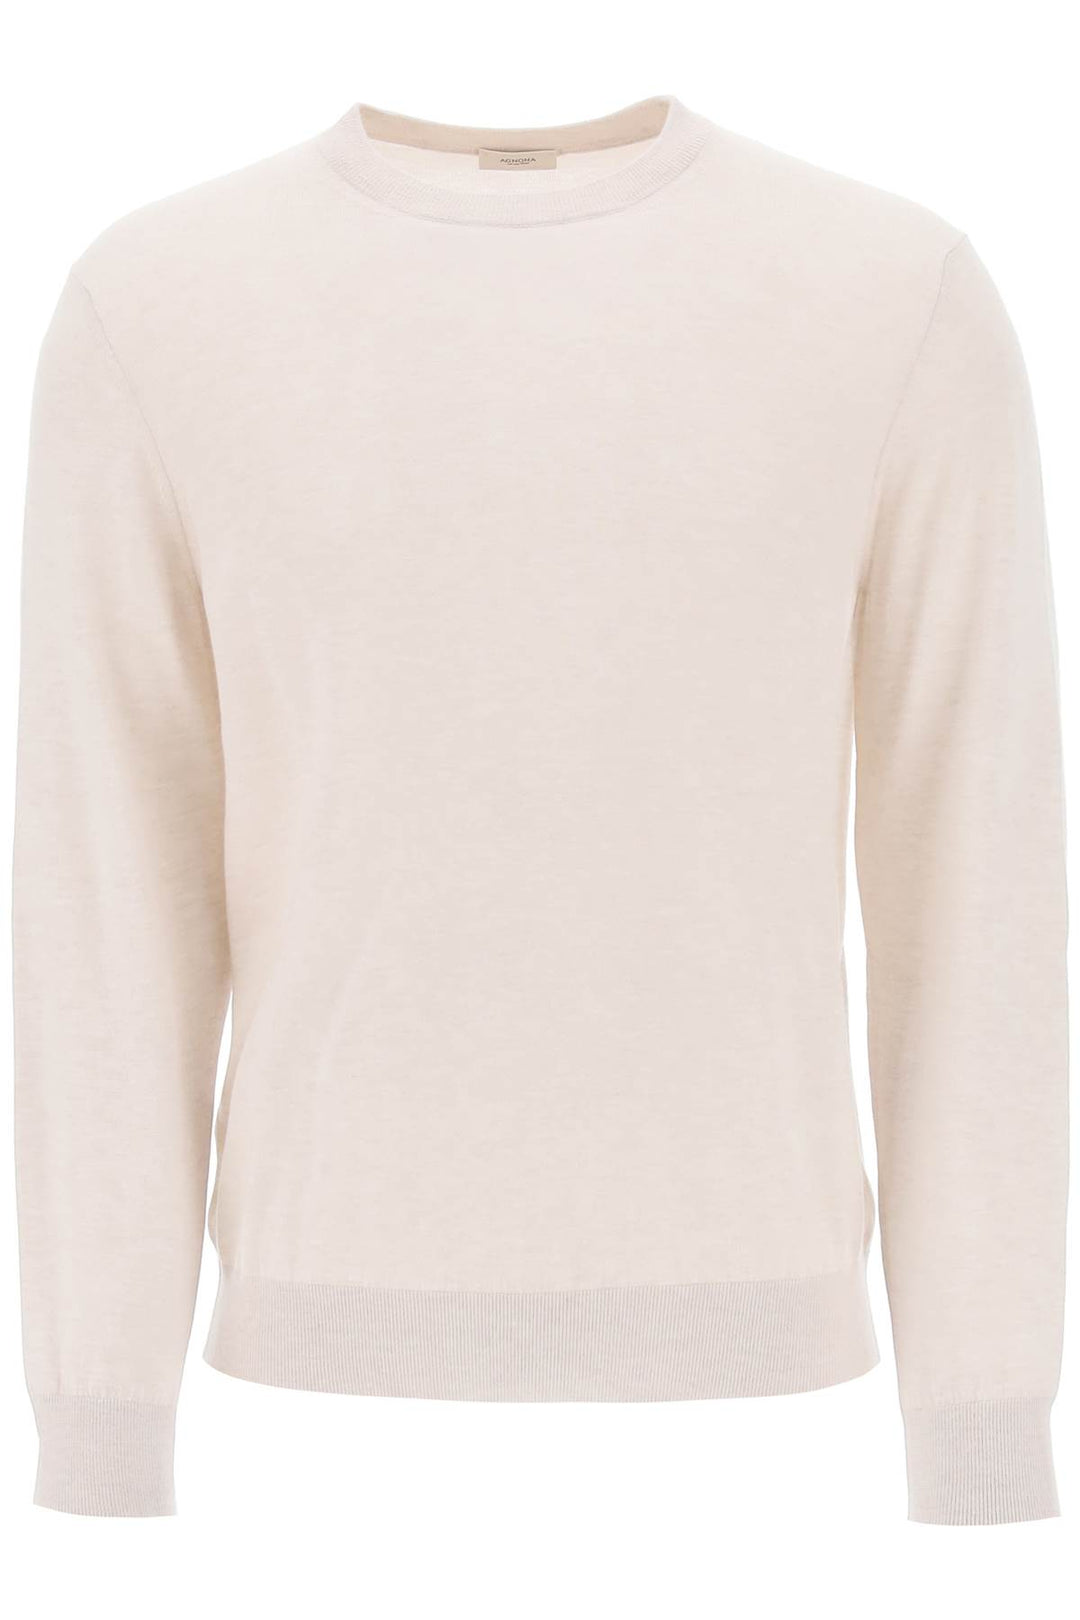 Agnona cashmere silk sweater-0